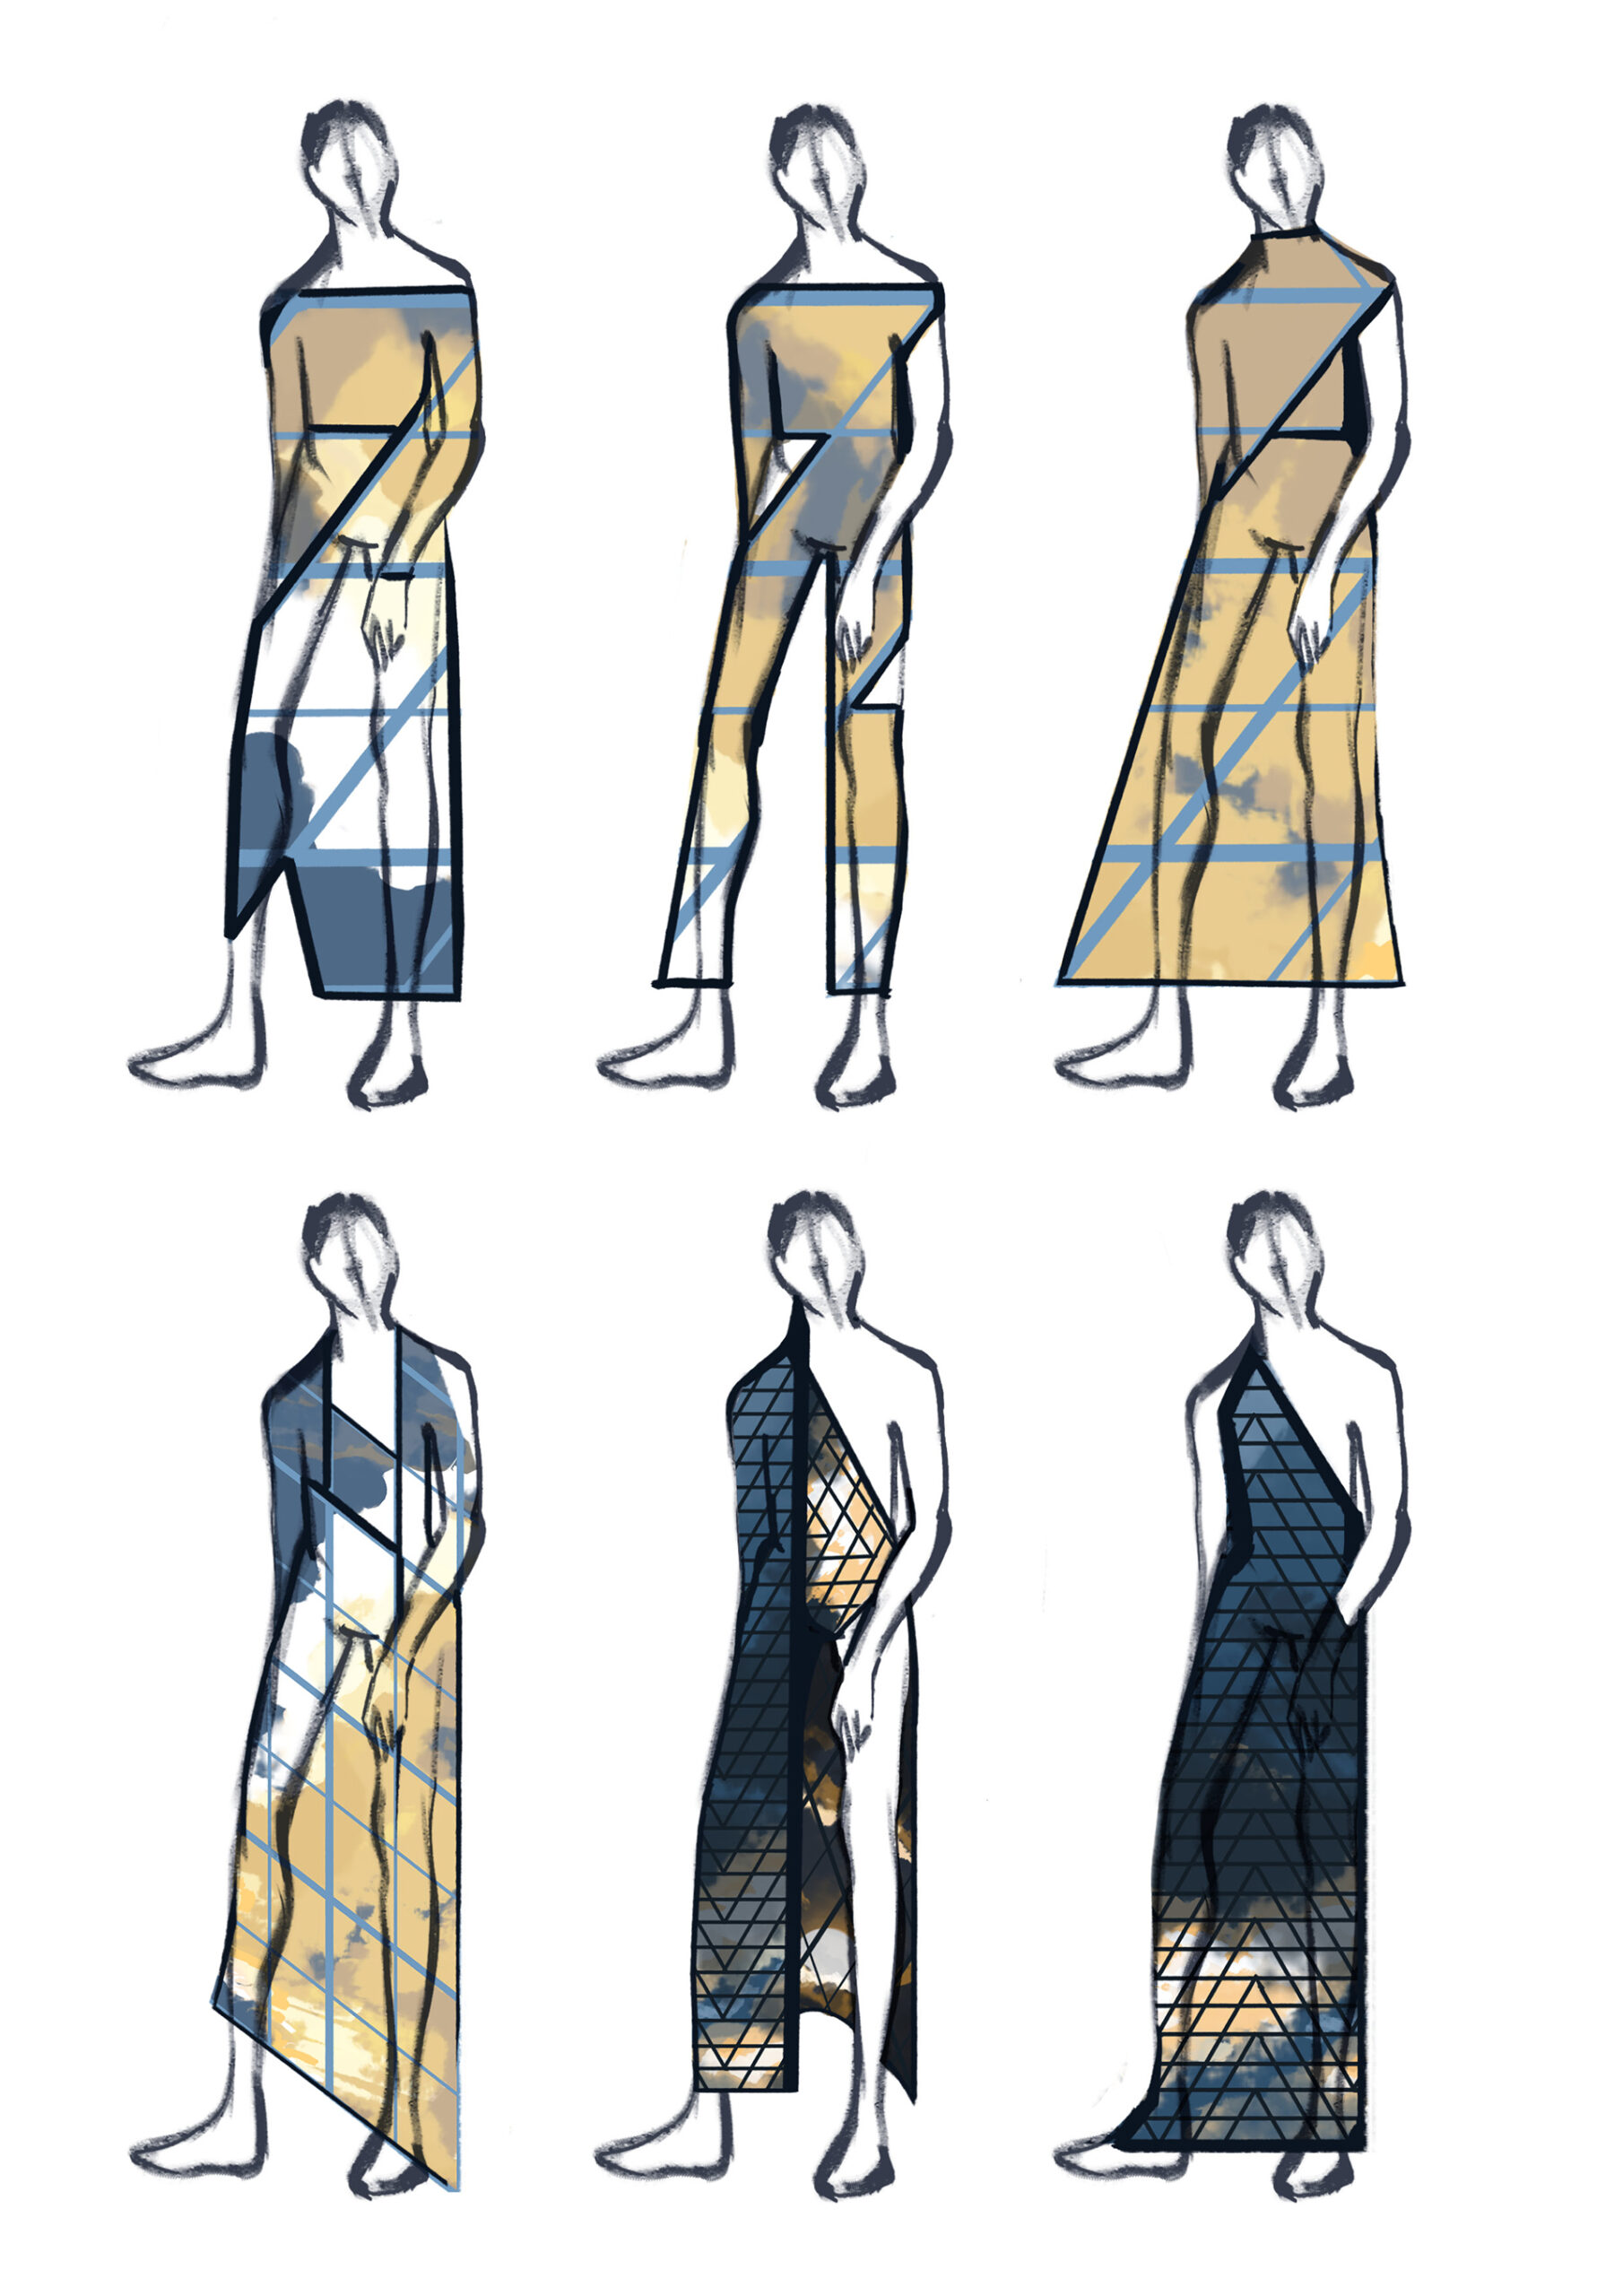 Zestaw sześciu narysowanych sylwetek w sukniach o geometrycznych kształtach i wzorach w odcieniach zgaszonej żółcieni i niebieskości.